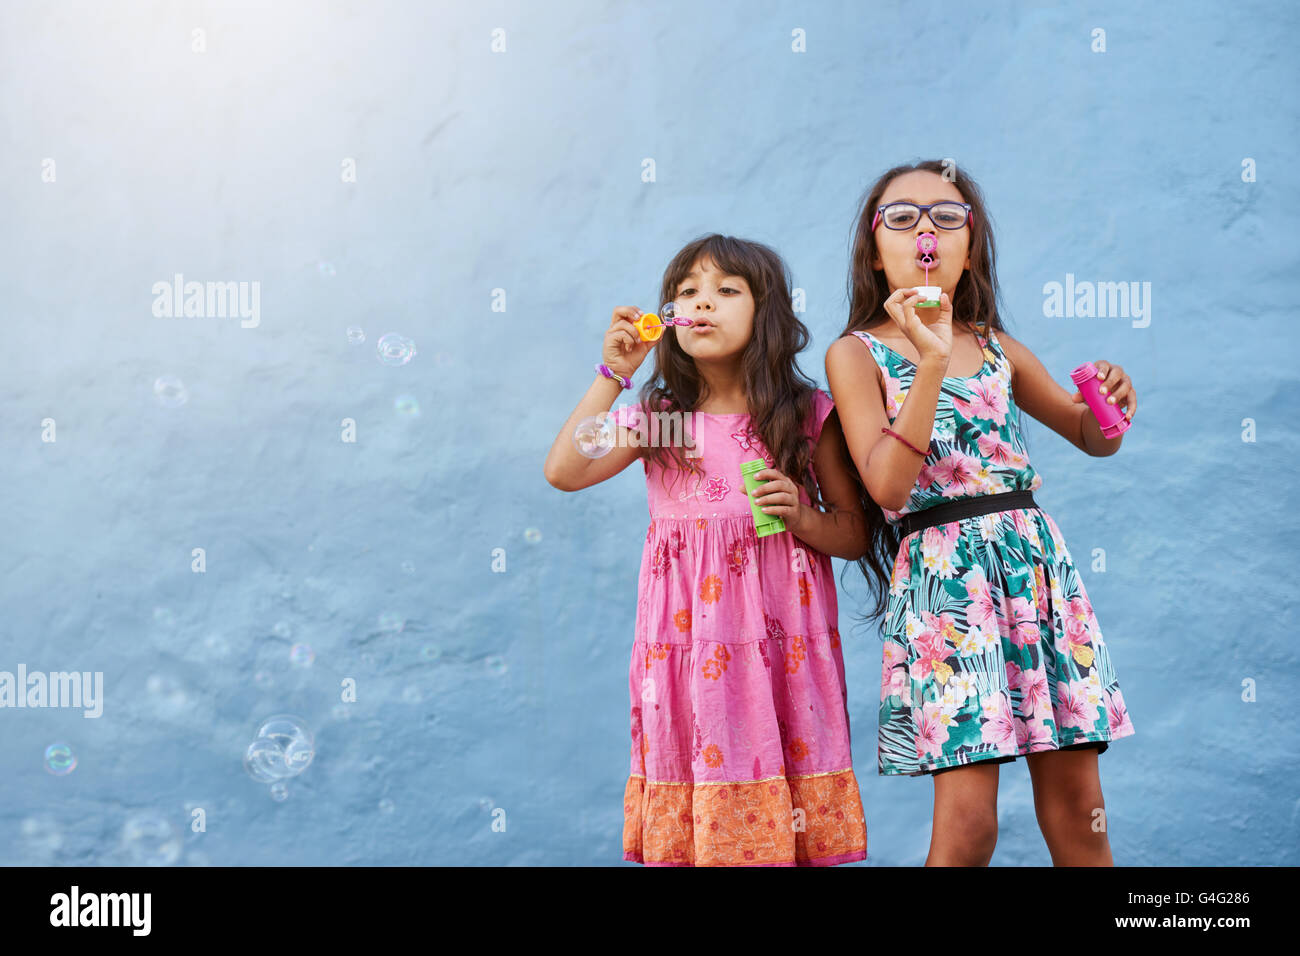 Porträt der entzückenden kleinen Mädchen Seifenblasen gegen blaue Wand. Zwei junge Mädchen zusammen zu spielen. Stockfoto